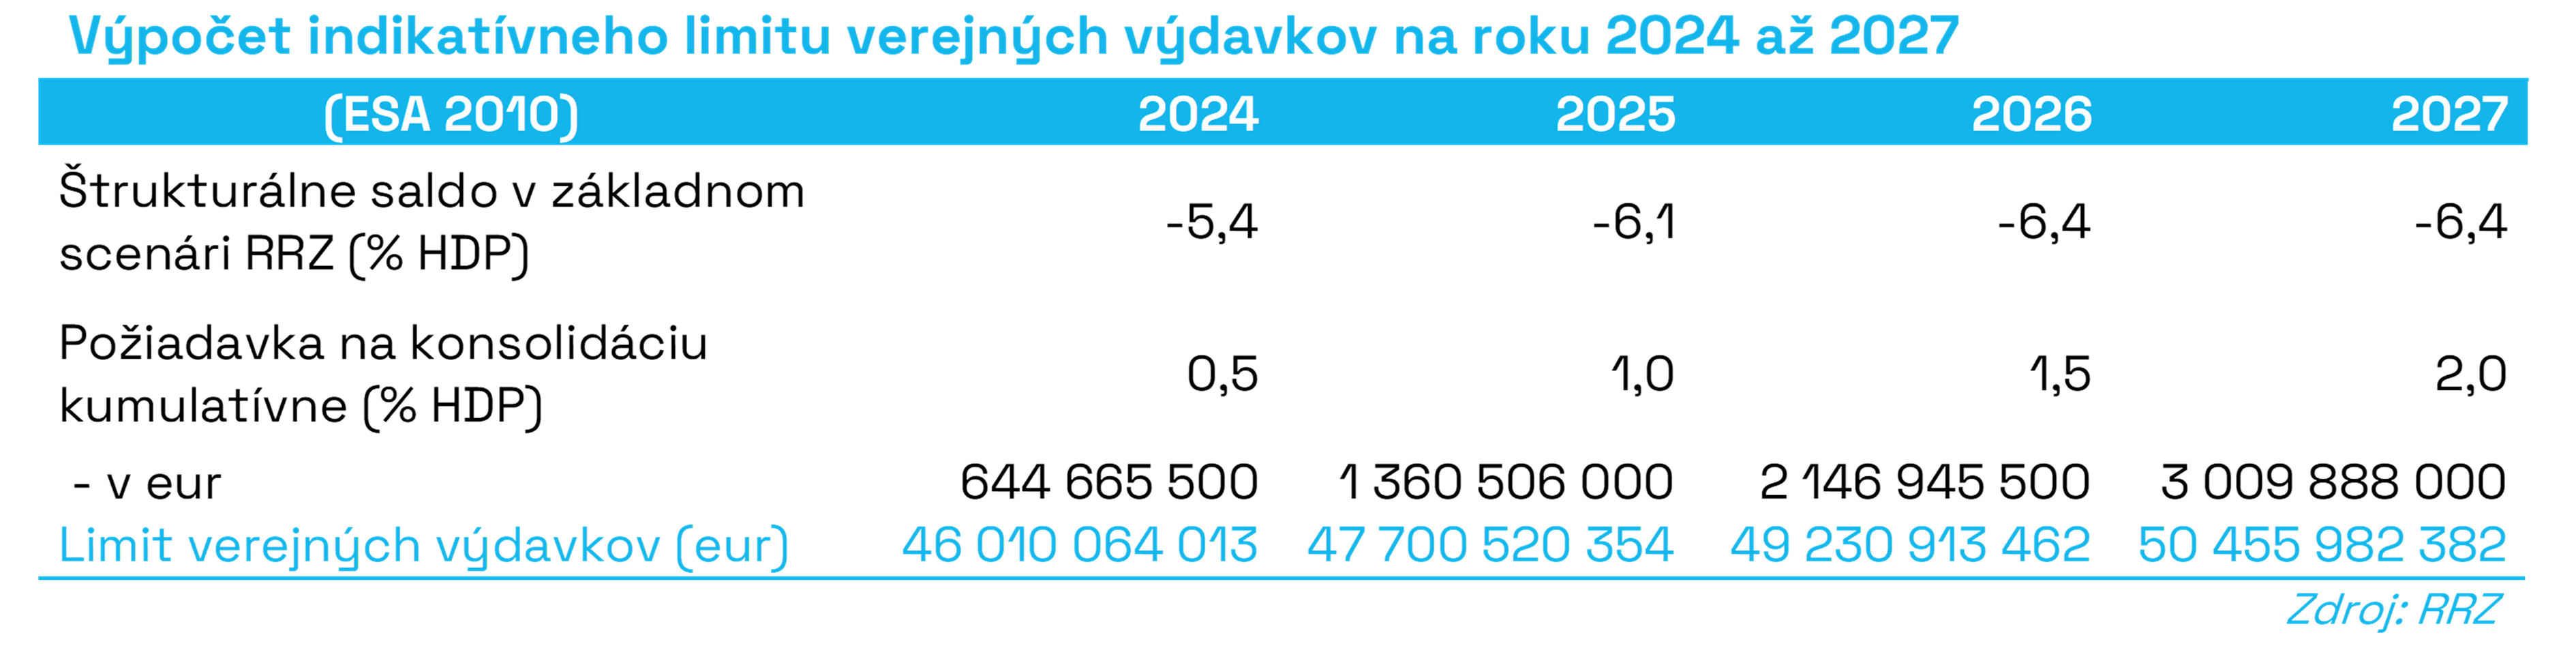 Výpočet_indikatívneho_limitu_verejných_výdavkov_na_roky_2024_až_2027